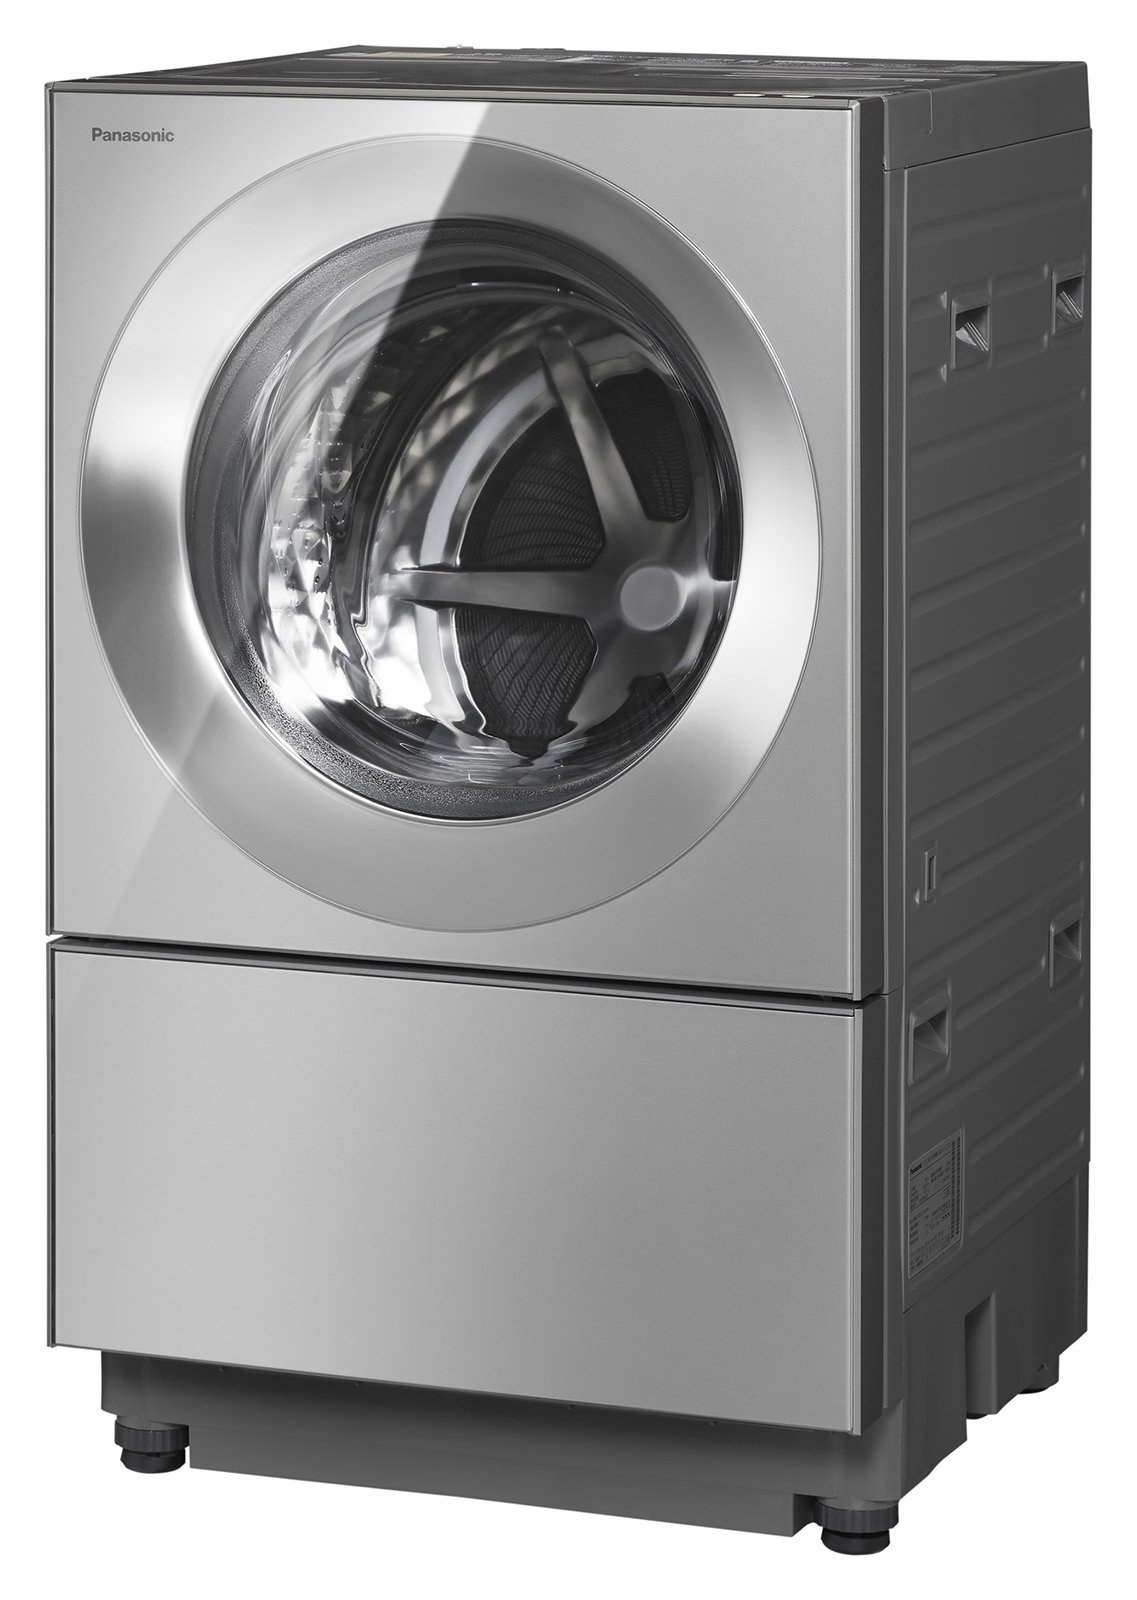 パナソニック「スマホで洗濯」対応ドラム式洗濯乾燥機 NA-VG2500